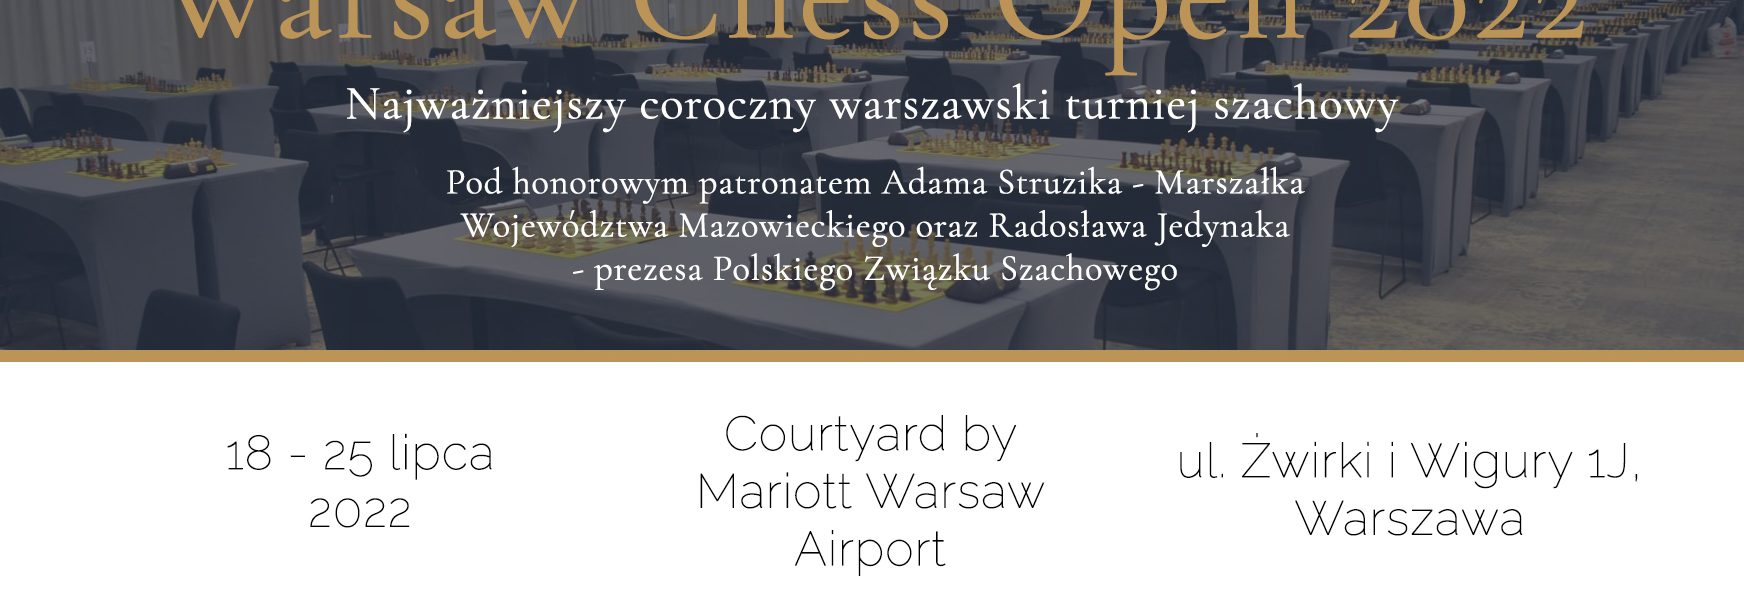 spotkajmy-sie-na-warsaw-chess-open-ii